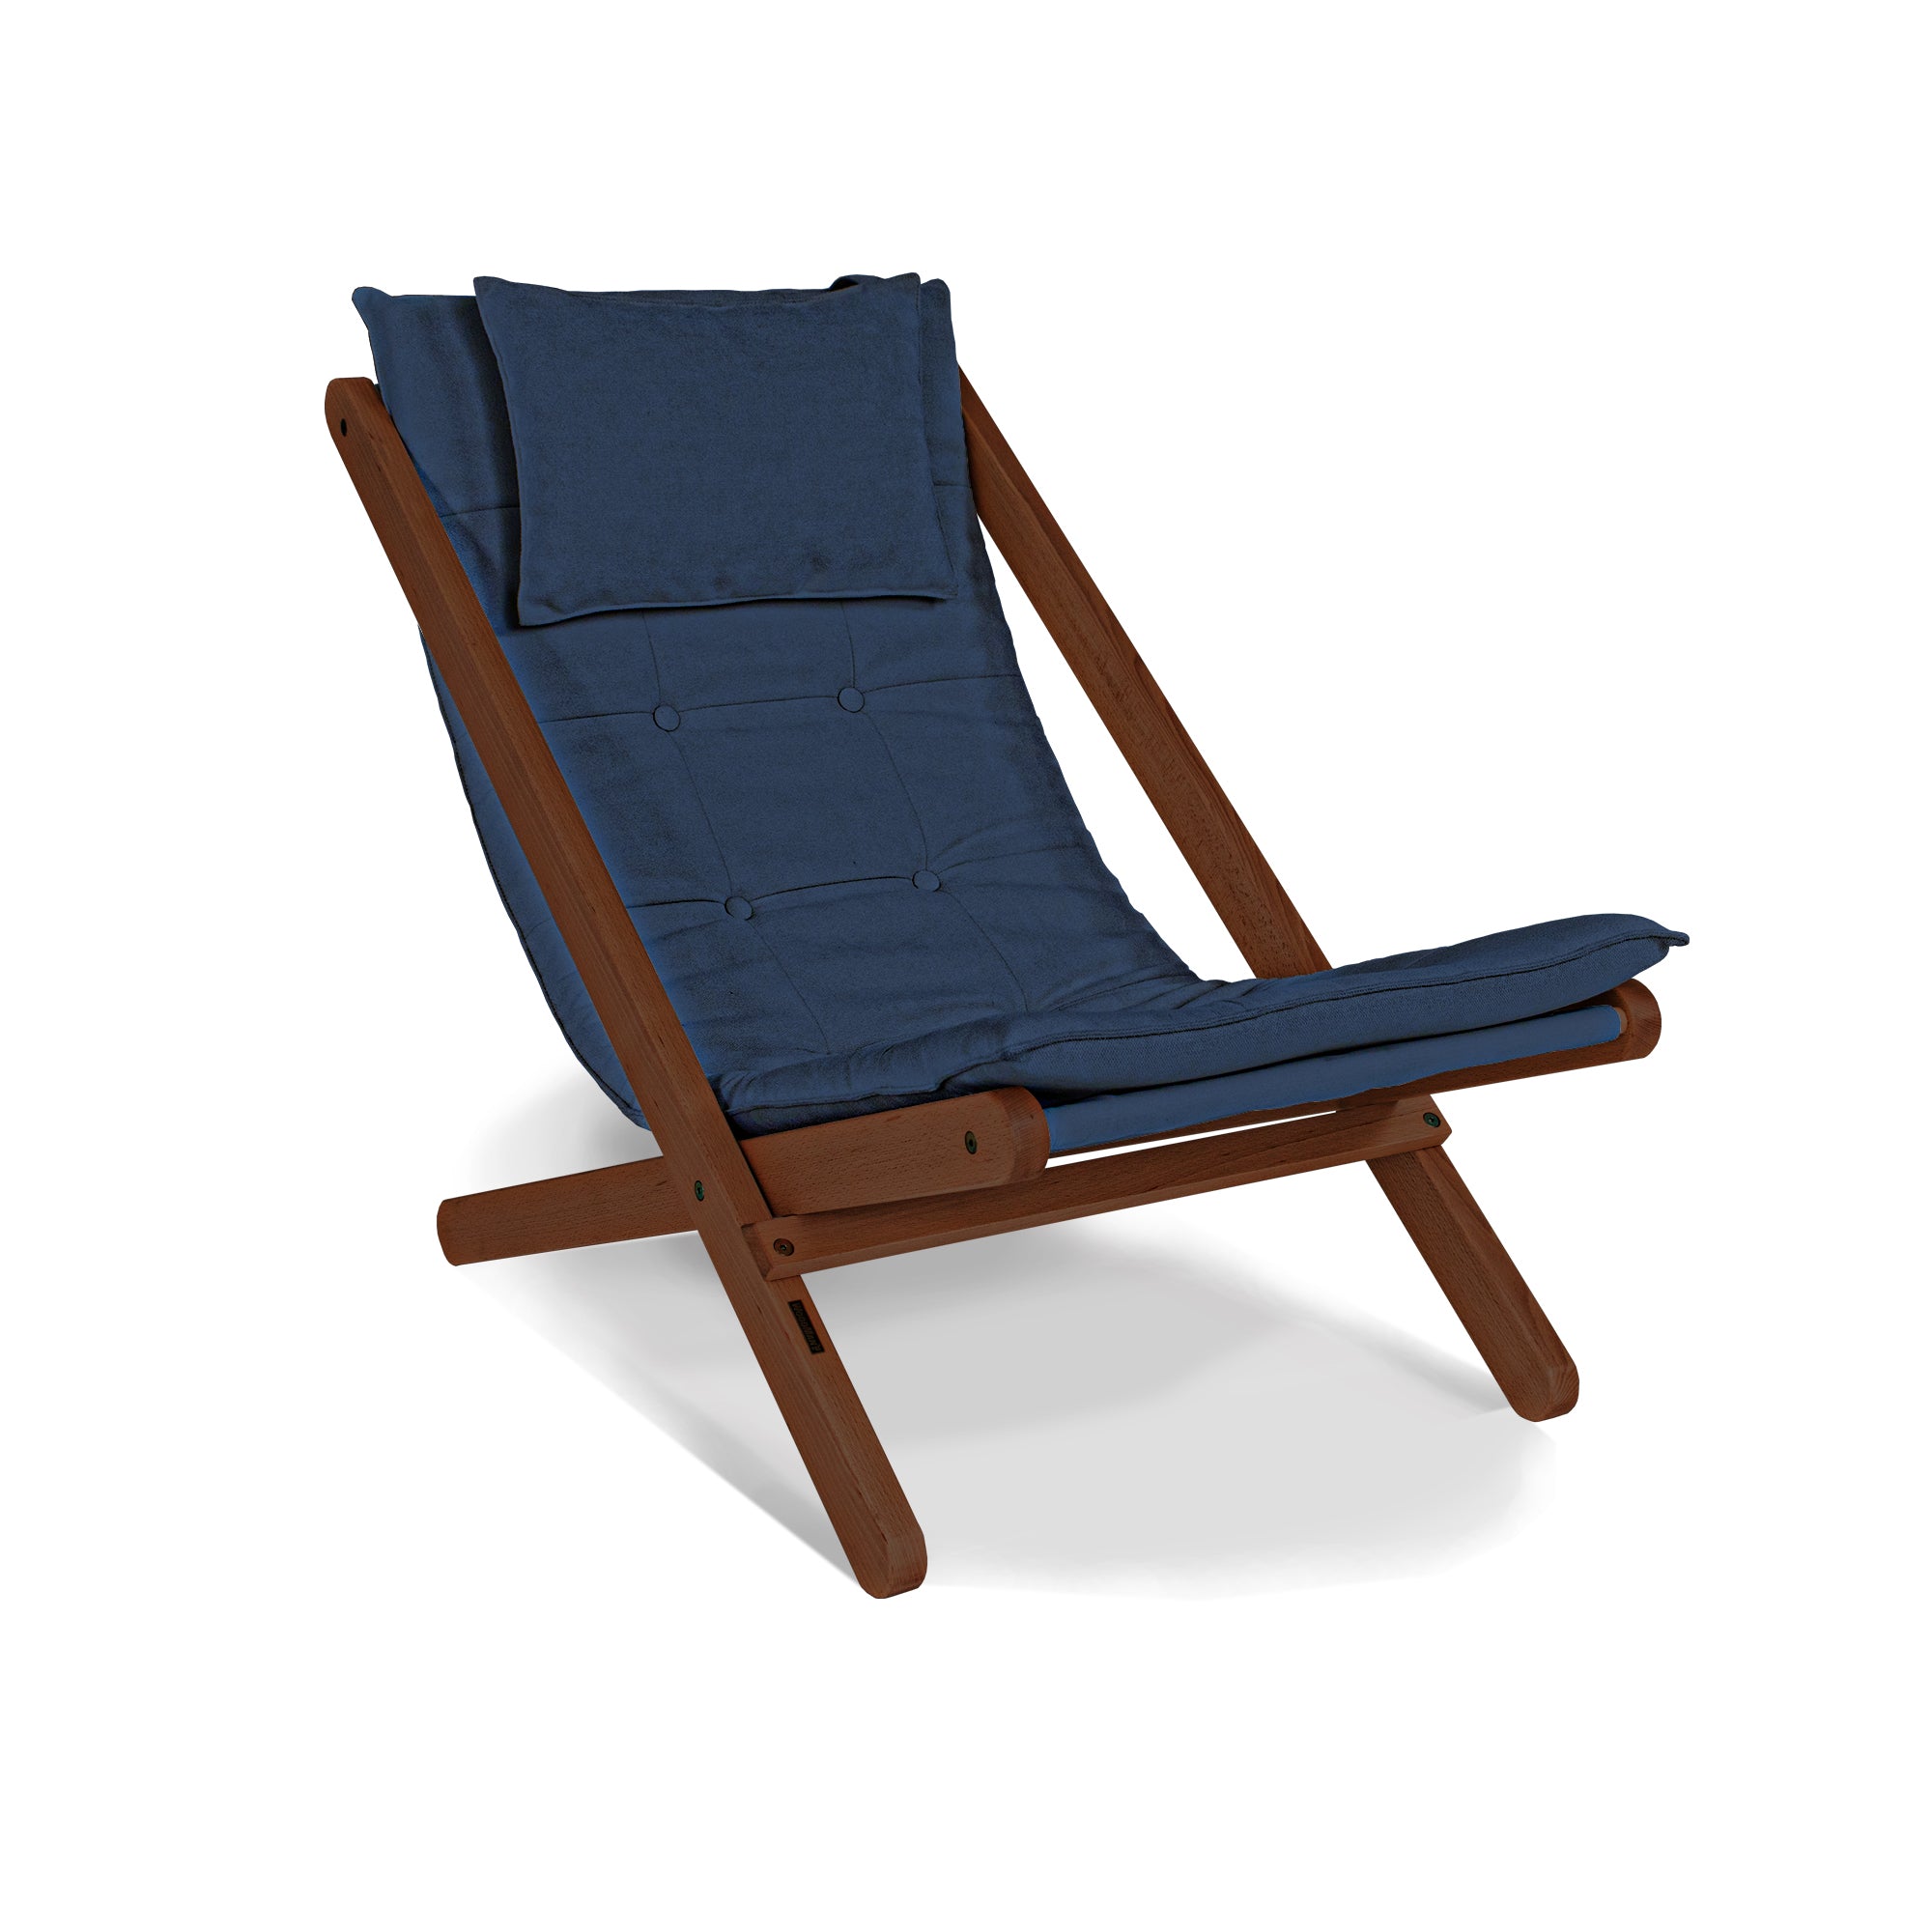 ALLEGRO Deckchair -walnut frame-blue fabric